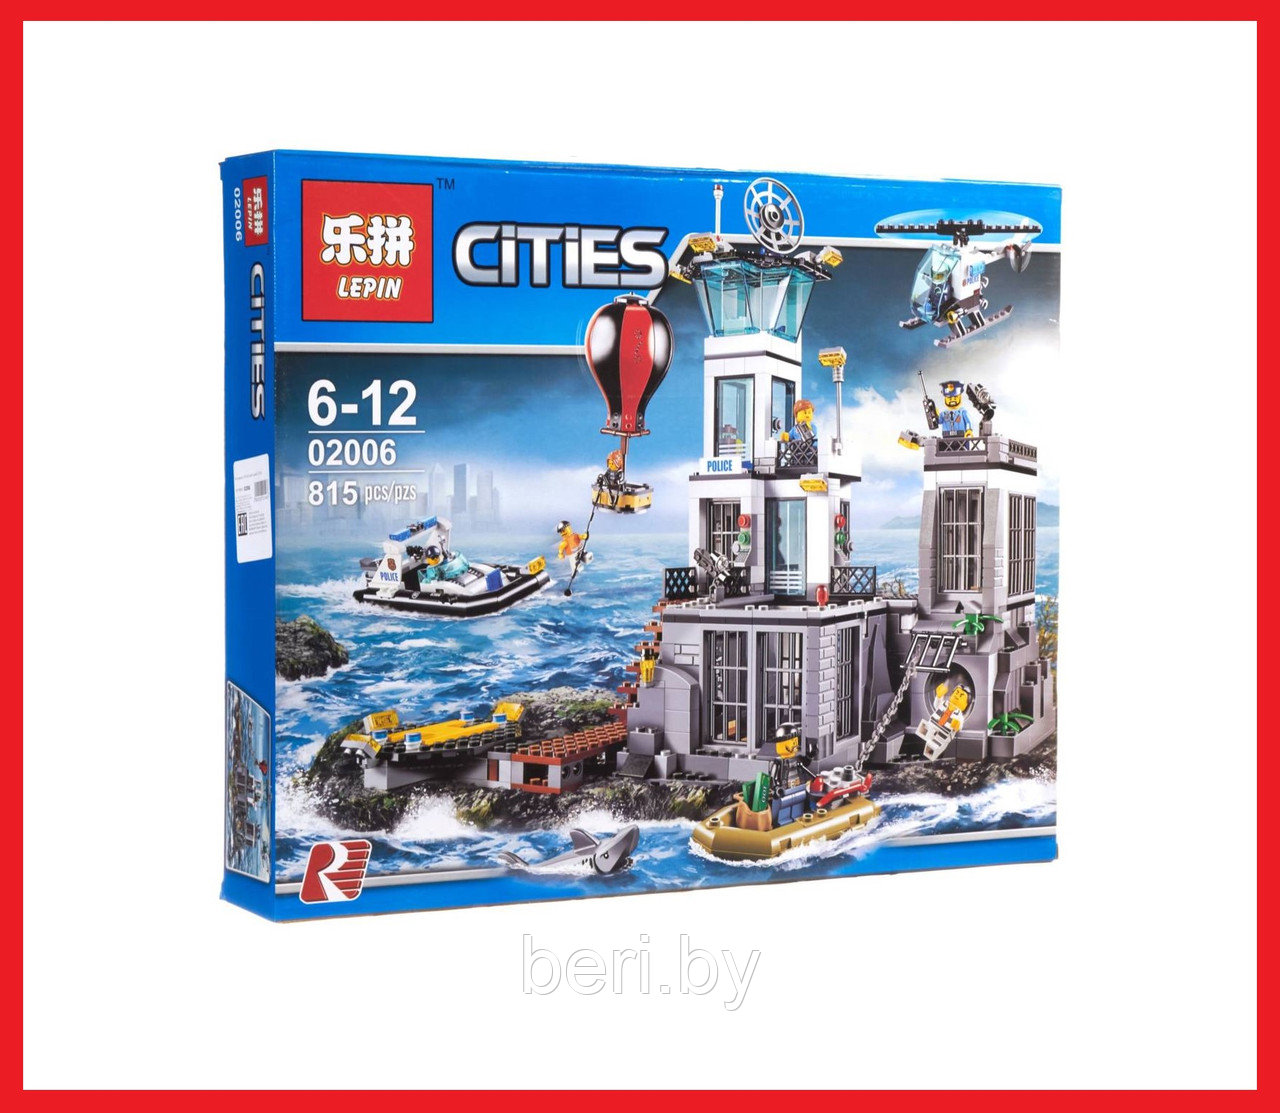 02006 Детский конструктор Lepin Cities "Остров-тюрьма", аналог Lego City (Лего Сити) 60130, 815 деталей